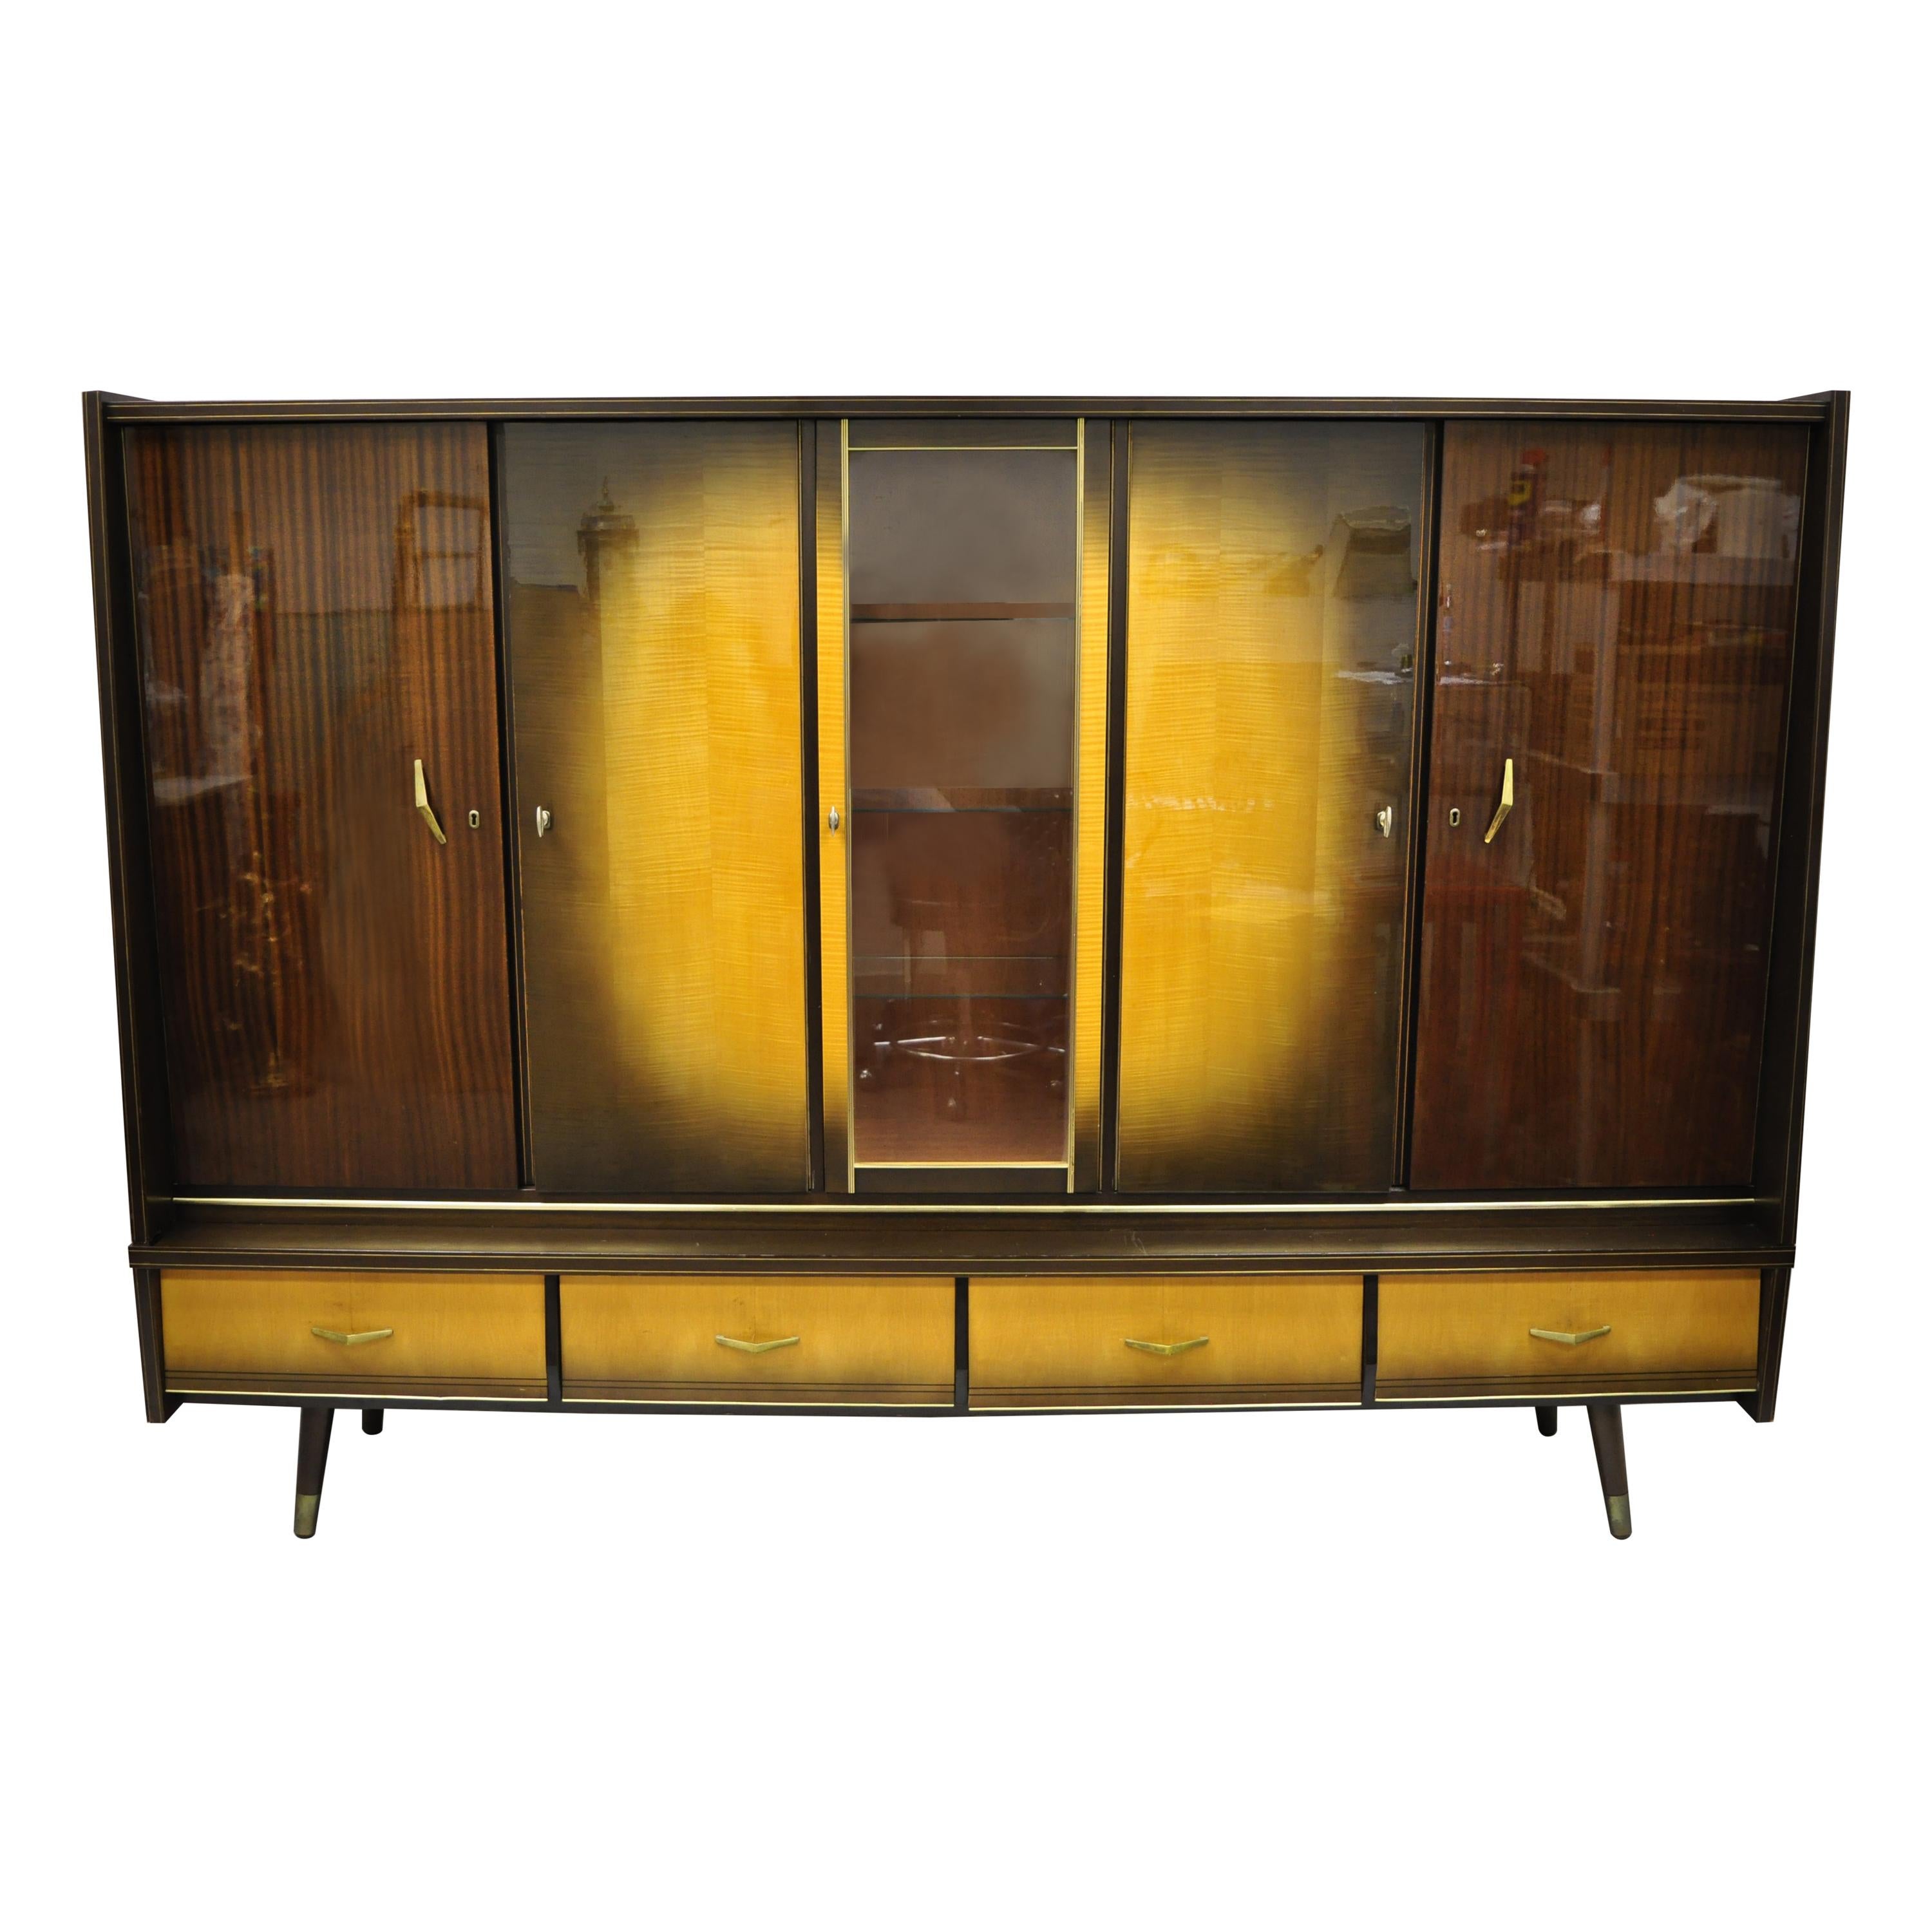 Mid-Century Modern German Atomic Era Large China Display Cabinet Bar Unit